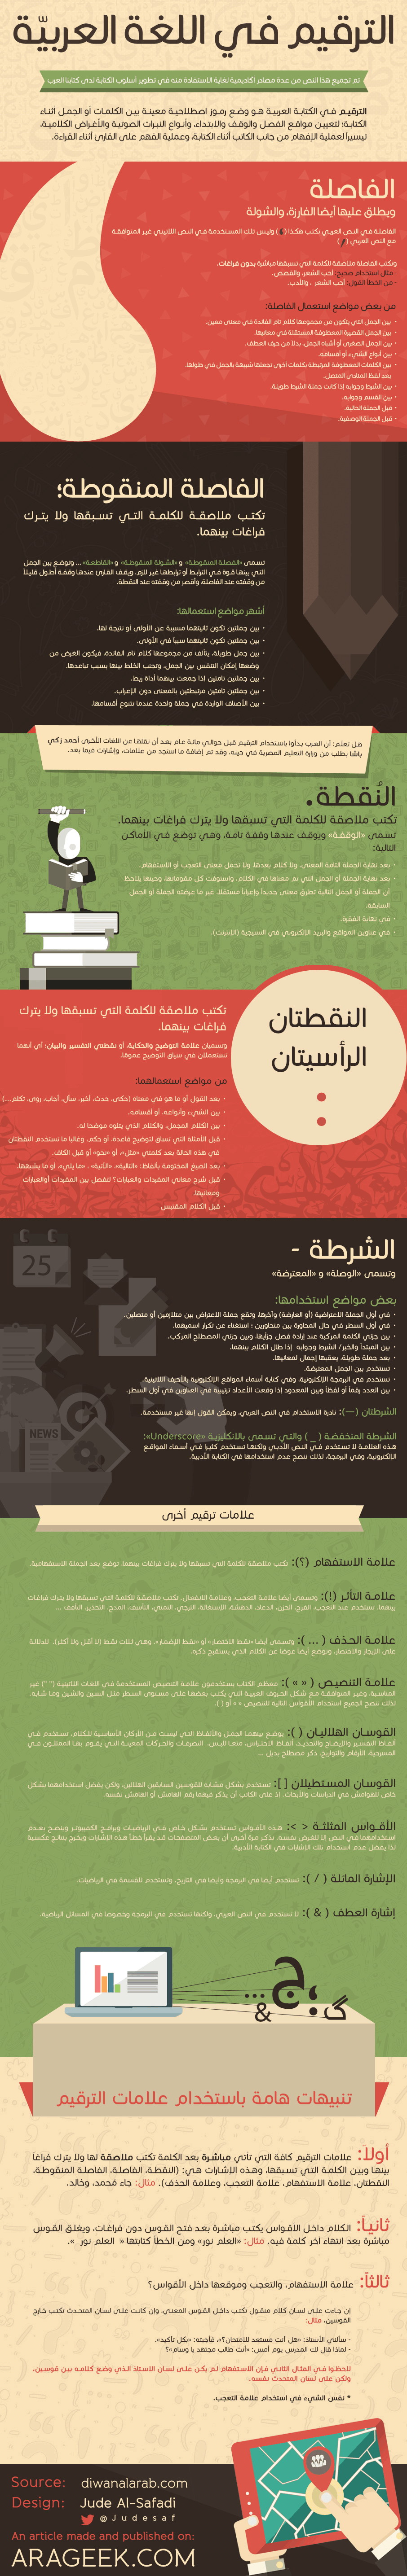 علامات الترقيم في اللغة العربية - انفوجرافيك 1